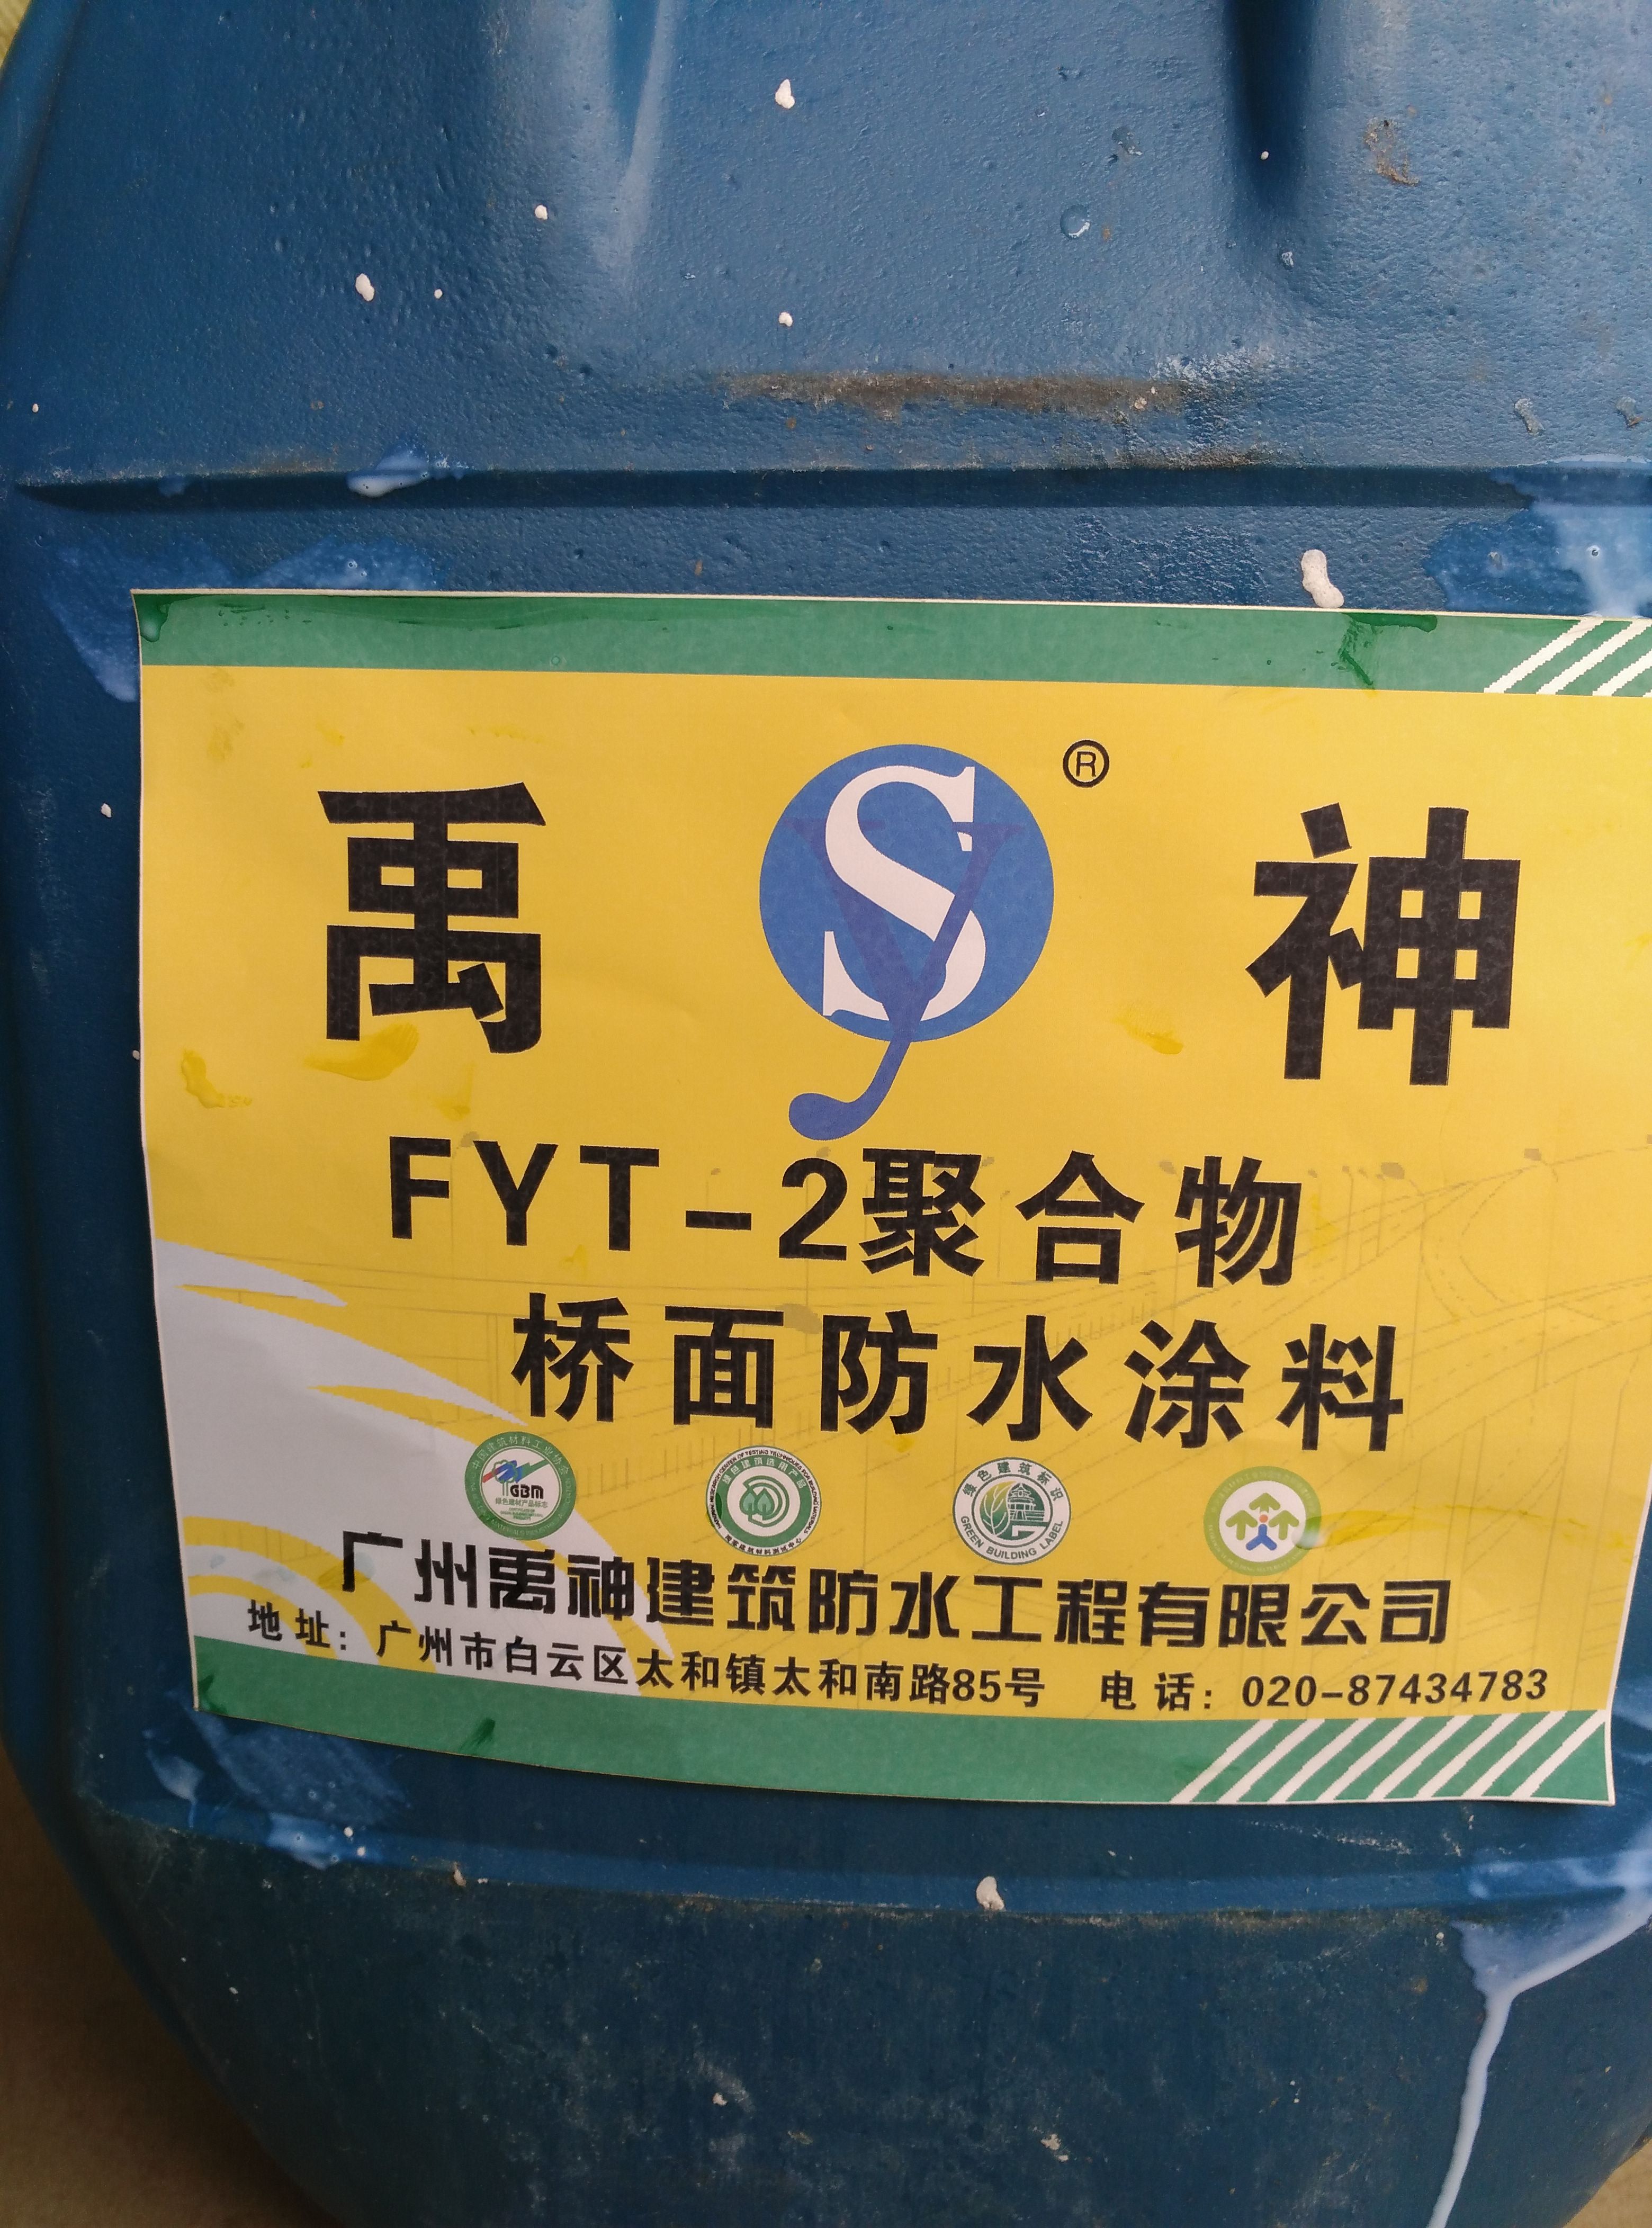 广州FYT—2 FYT—2道桥防水涂料批发价格图片